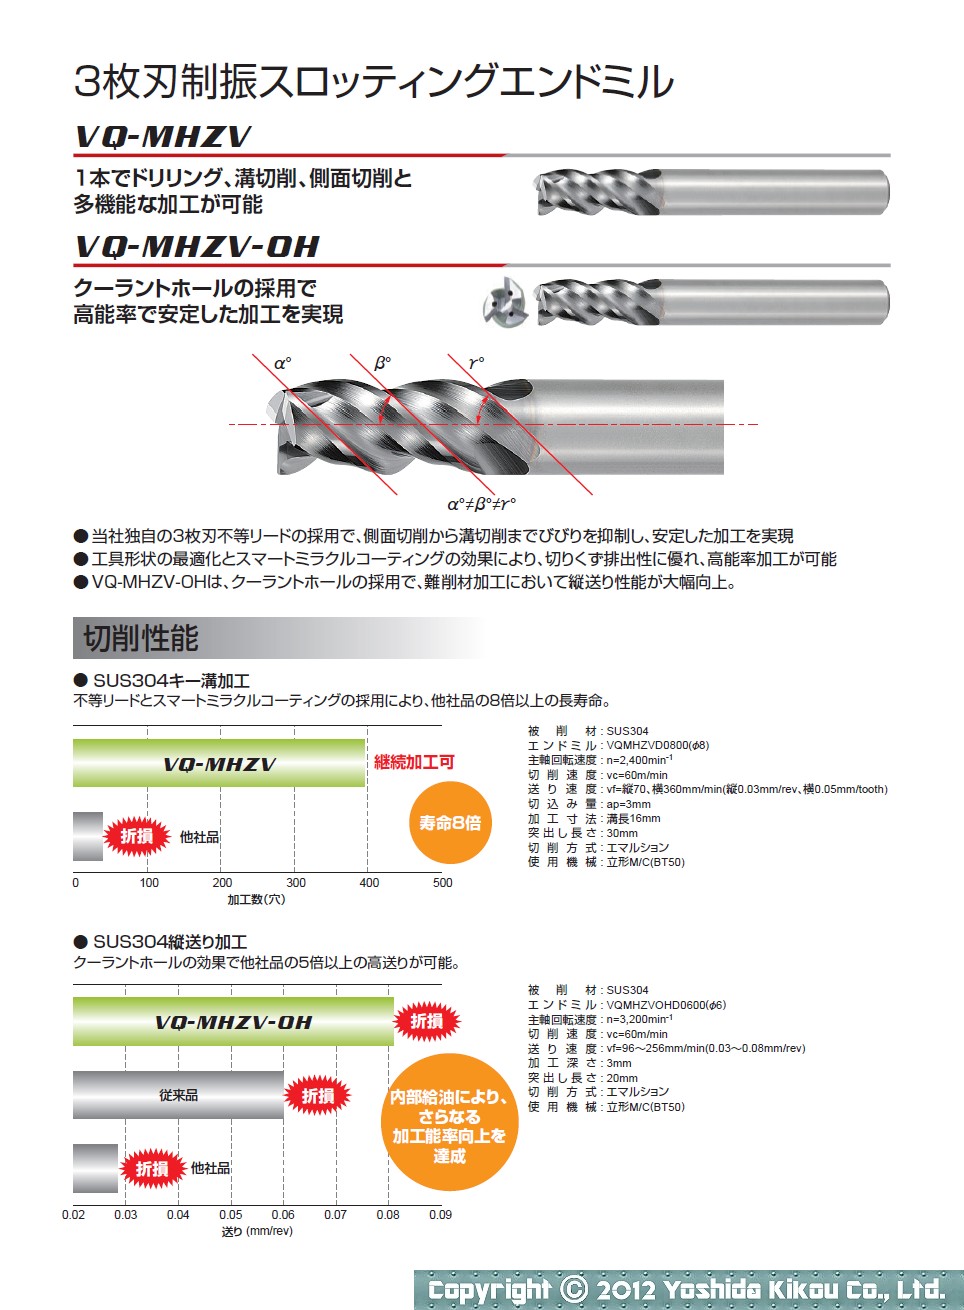 吉田機工株式会社 Yoshida Kikou Co.,Ltd. 難削材加工用エンドミル「スマートミラクル エンドミルシリーズ」